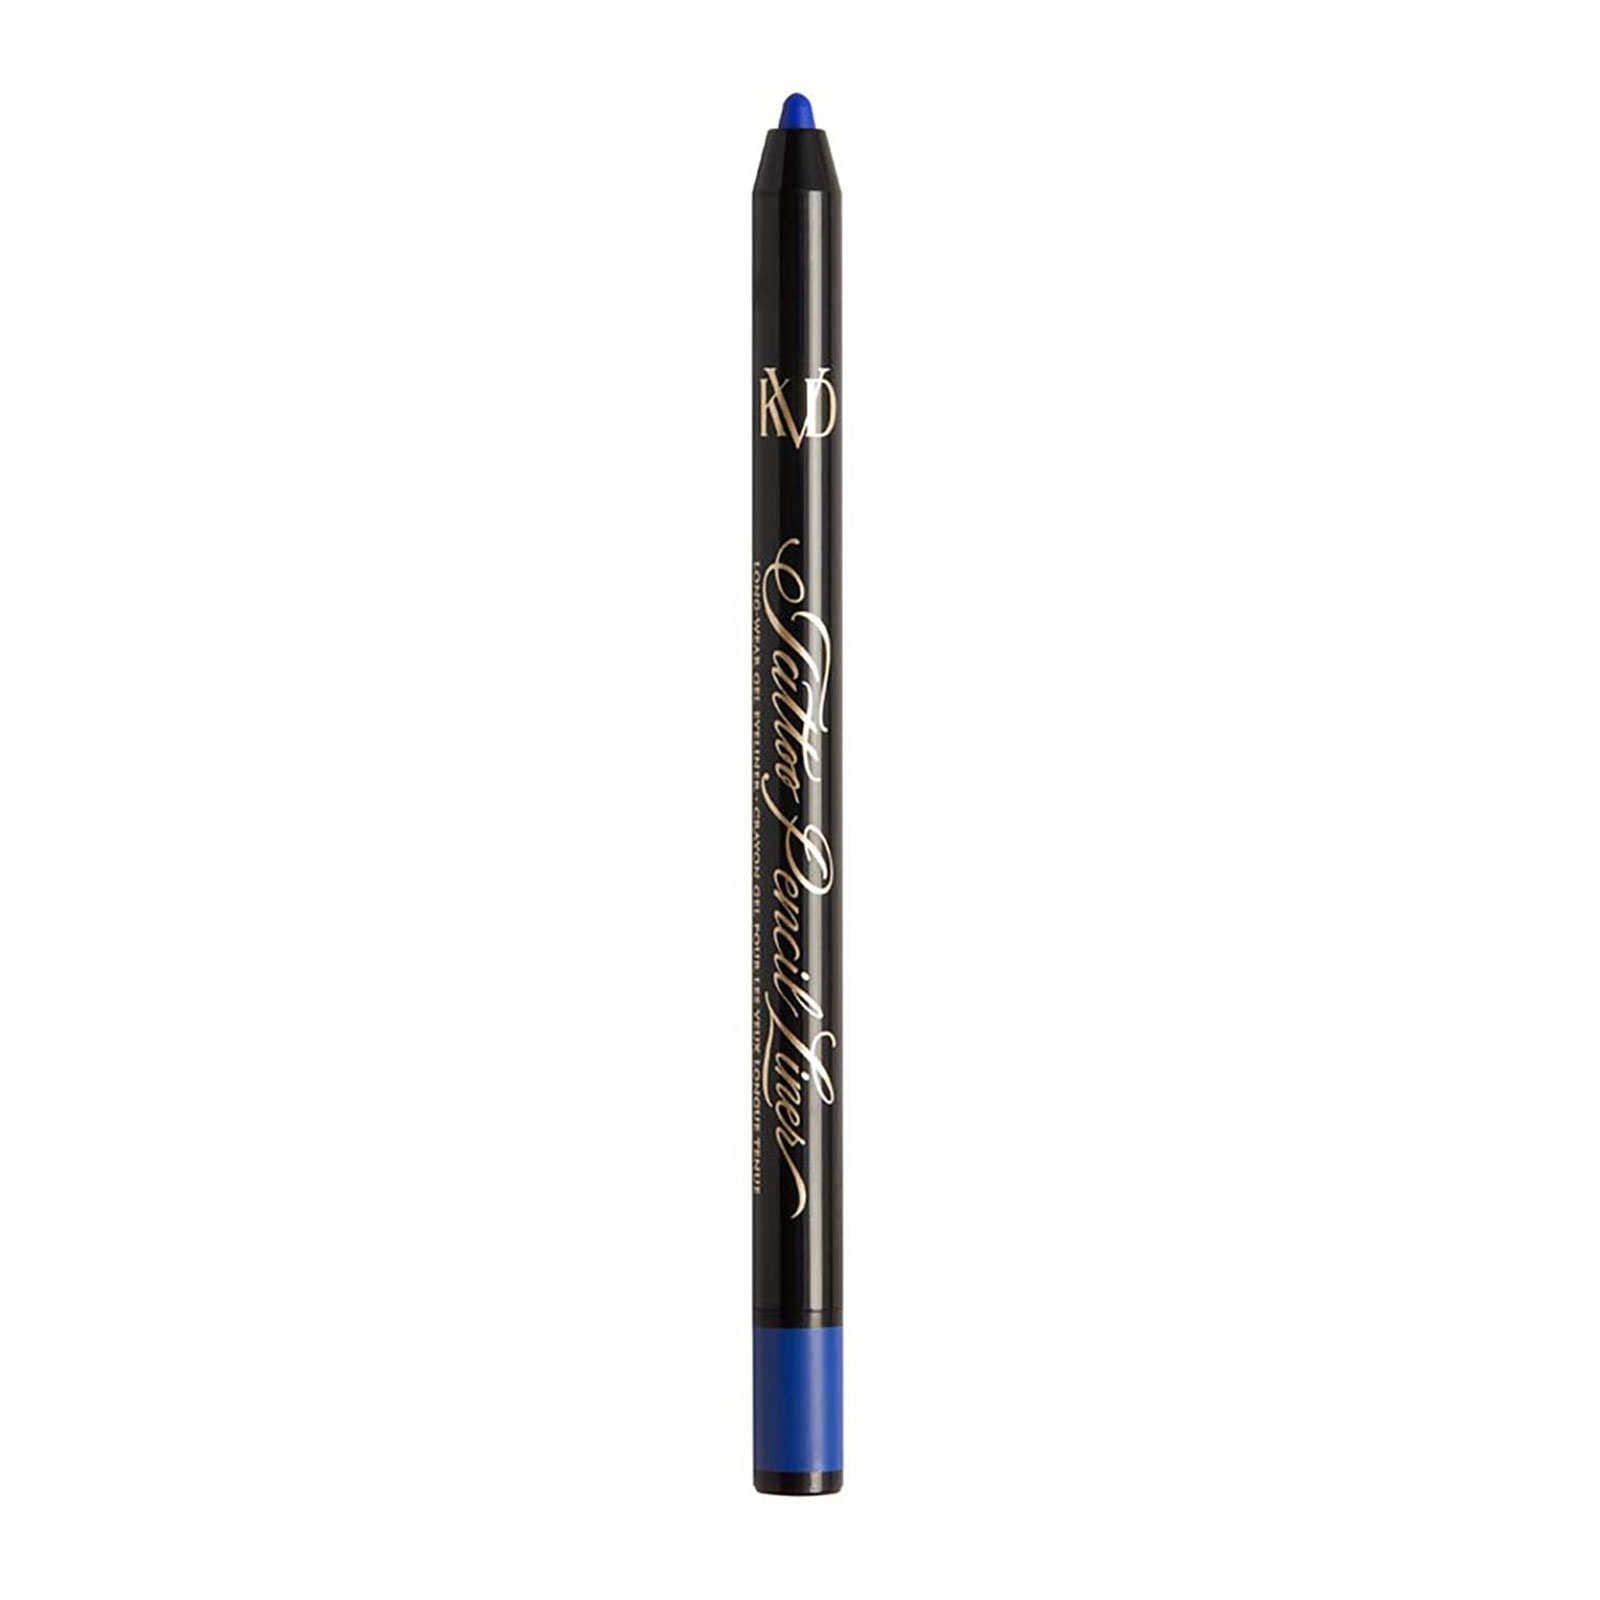 Kvd Beauty Tattoo Pencil Liner Waterproof Long-Wear Gel Eyeliner 0.5G Azurite Blue